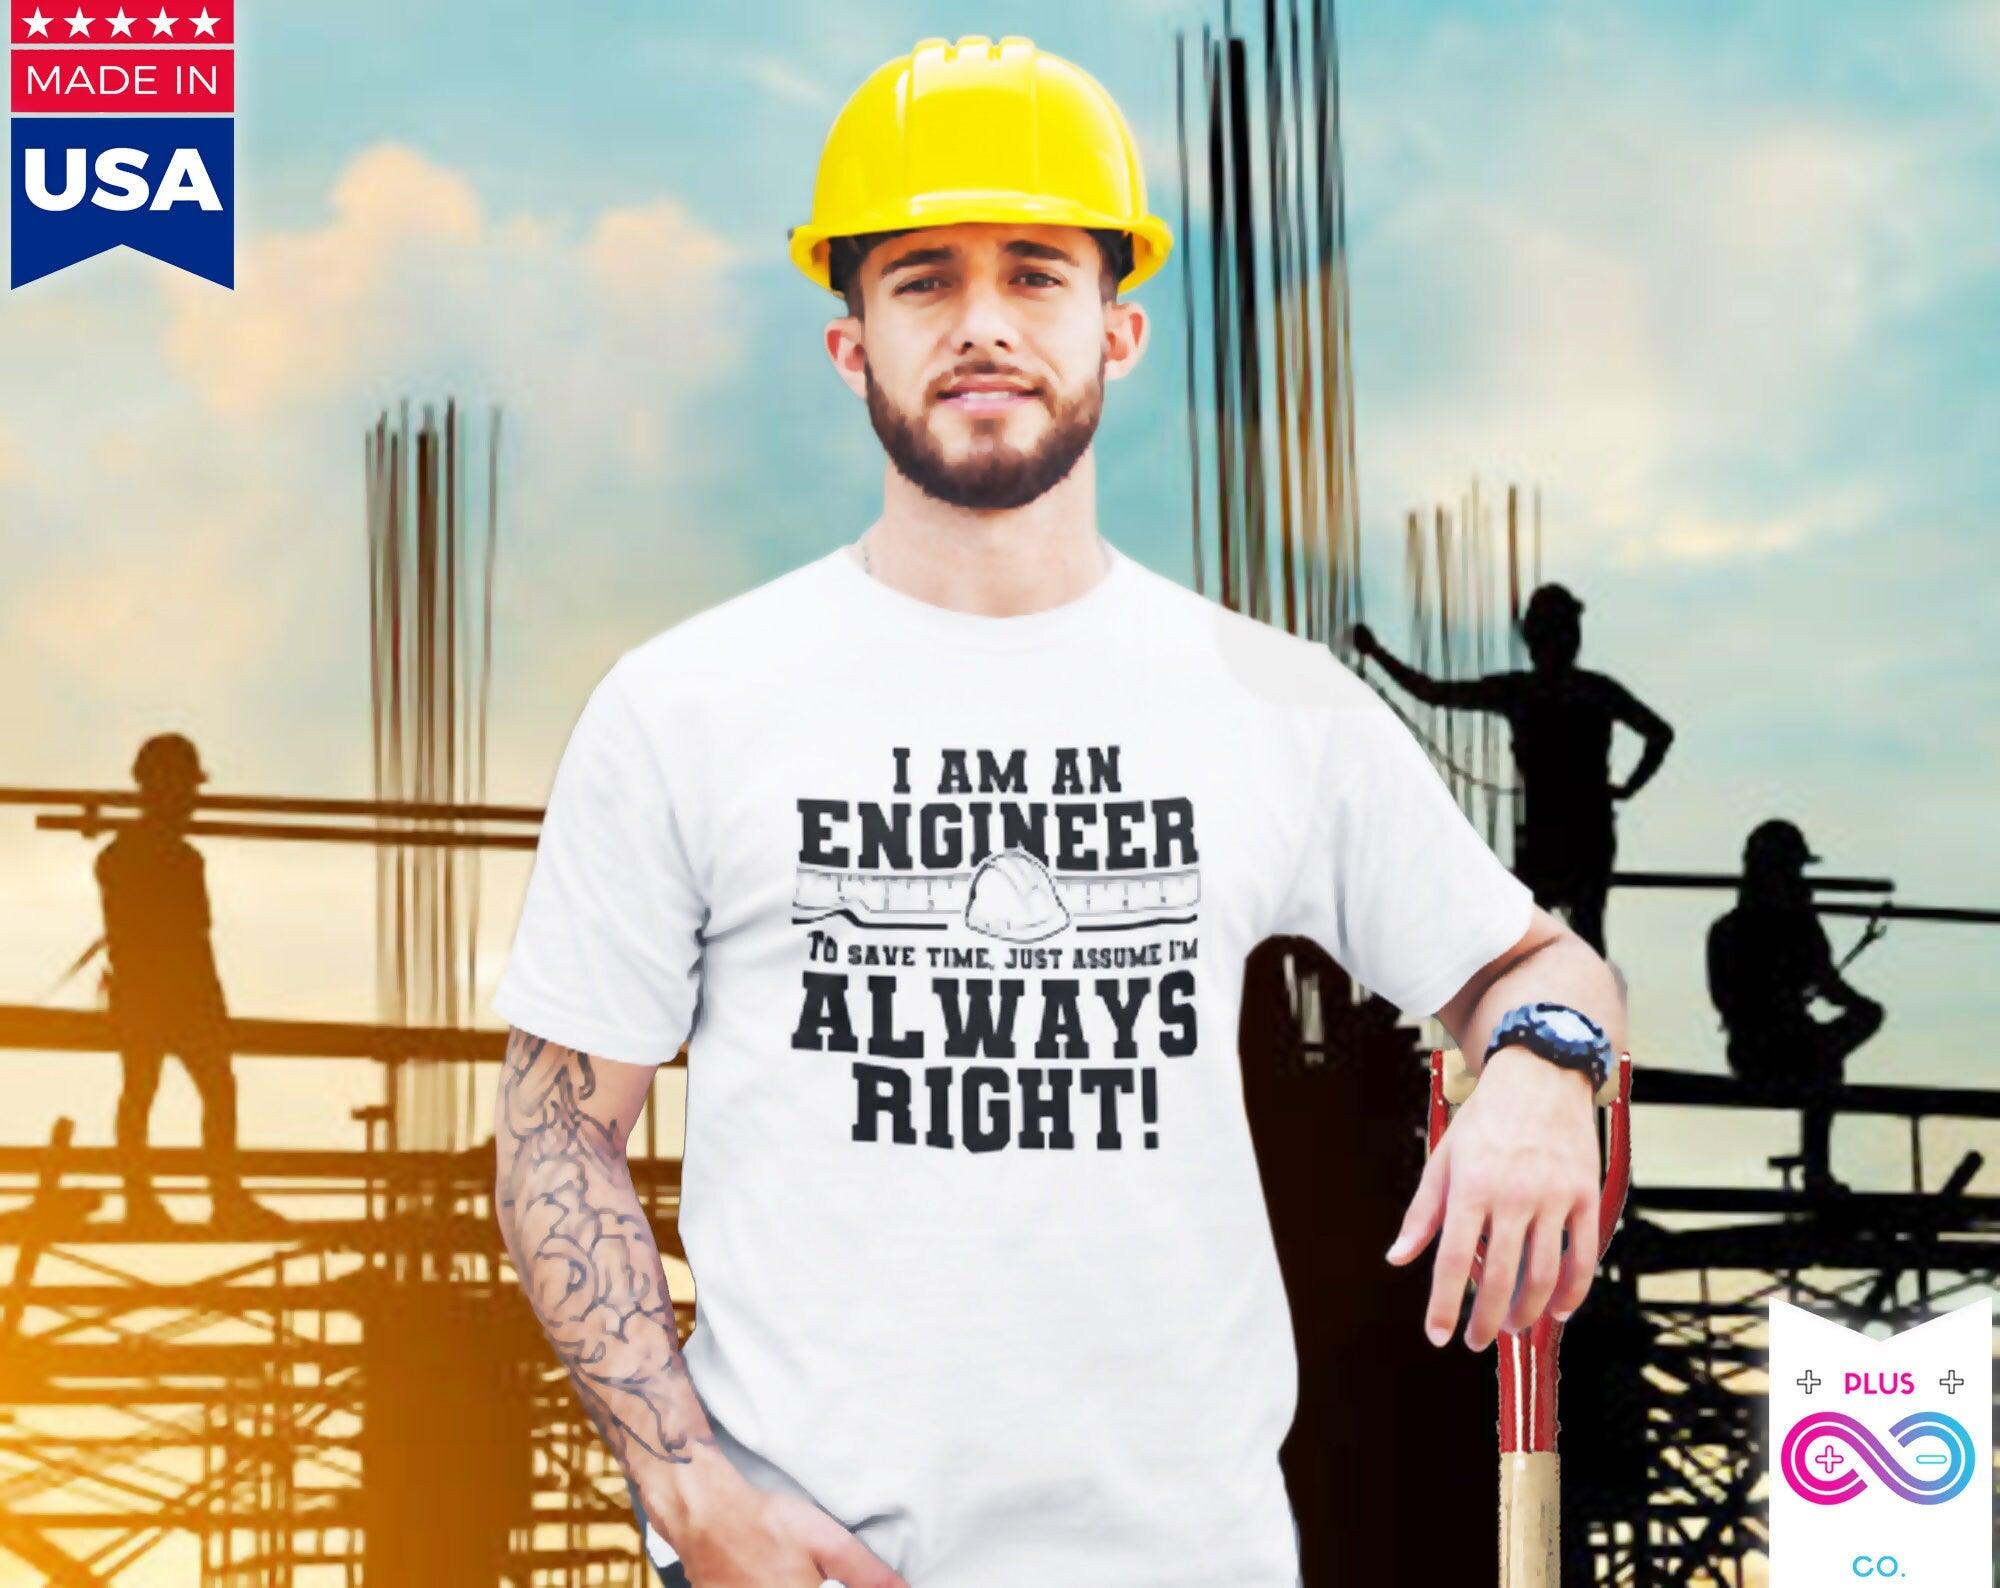 Jestem inżynierem Printed Letter Lato 2022 Męskie T-shirty Bawełniana koszulka z krótkim rękawem, prezent dla inżynierów, inżynierowie mają zawsze rację Tee, tees - plusminusco.com